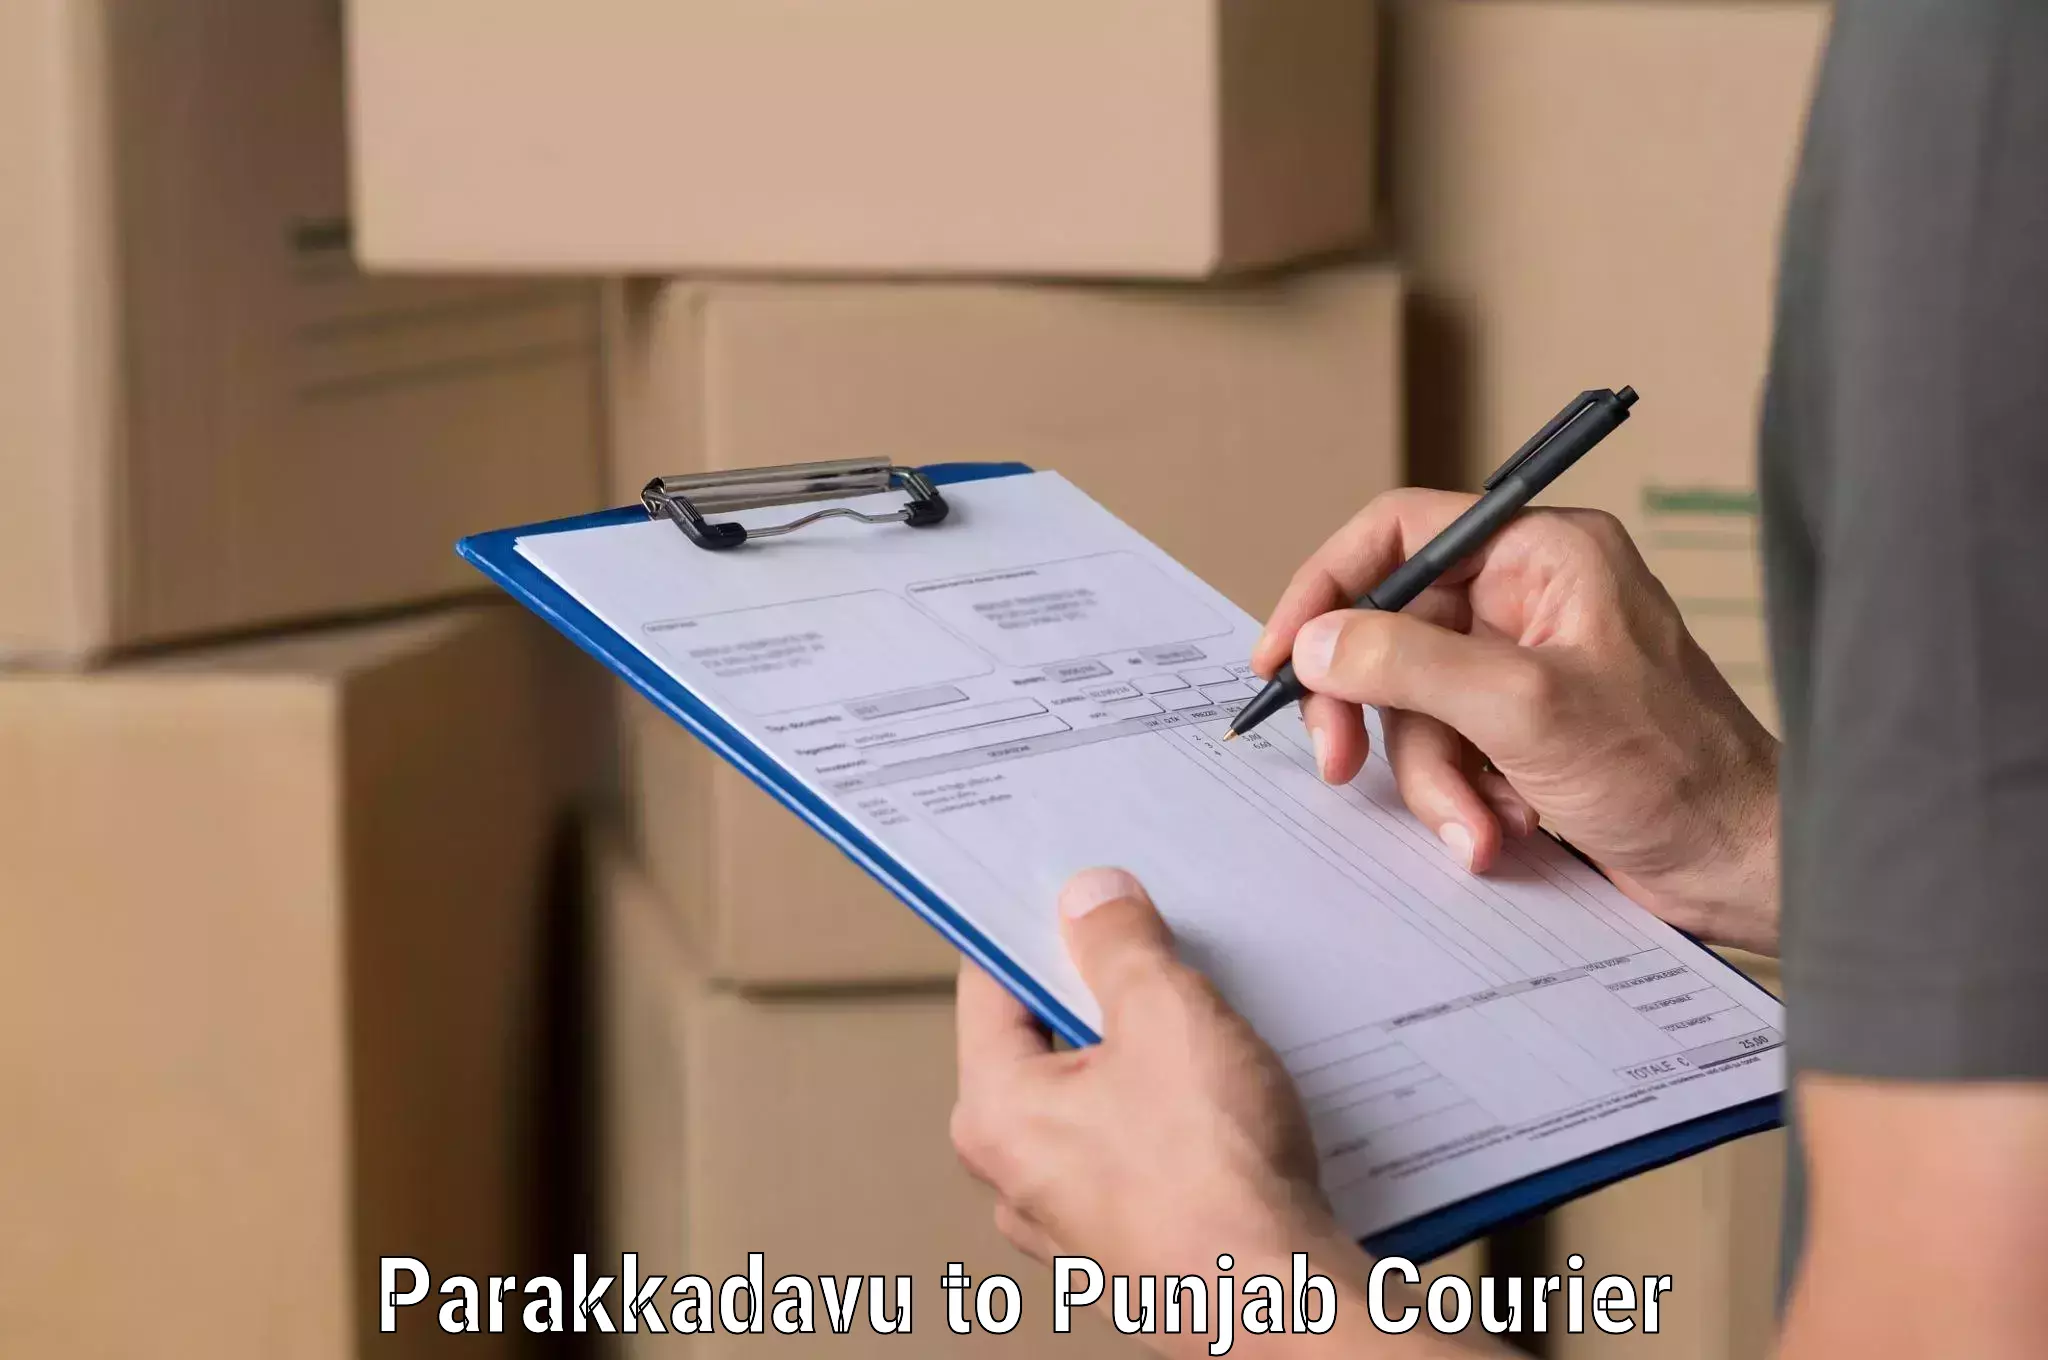 Professional parcel services Parakkadavu to Kotkapura